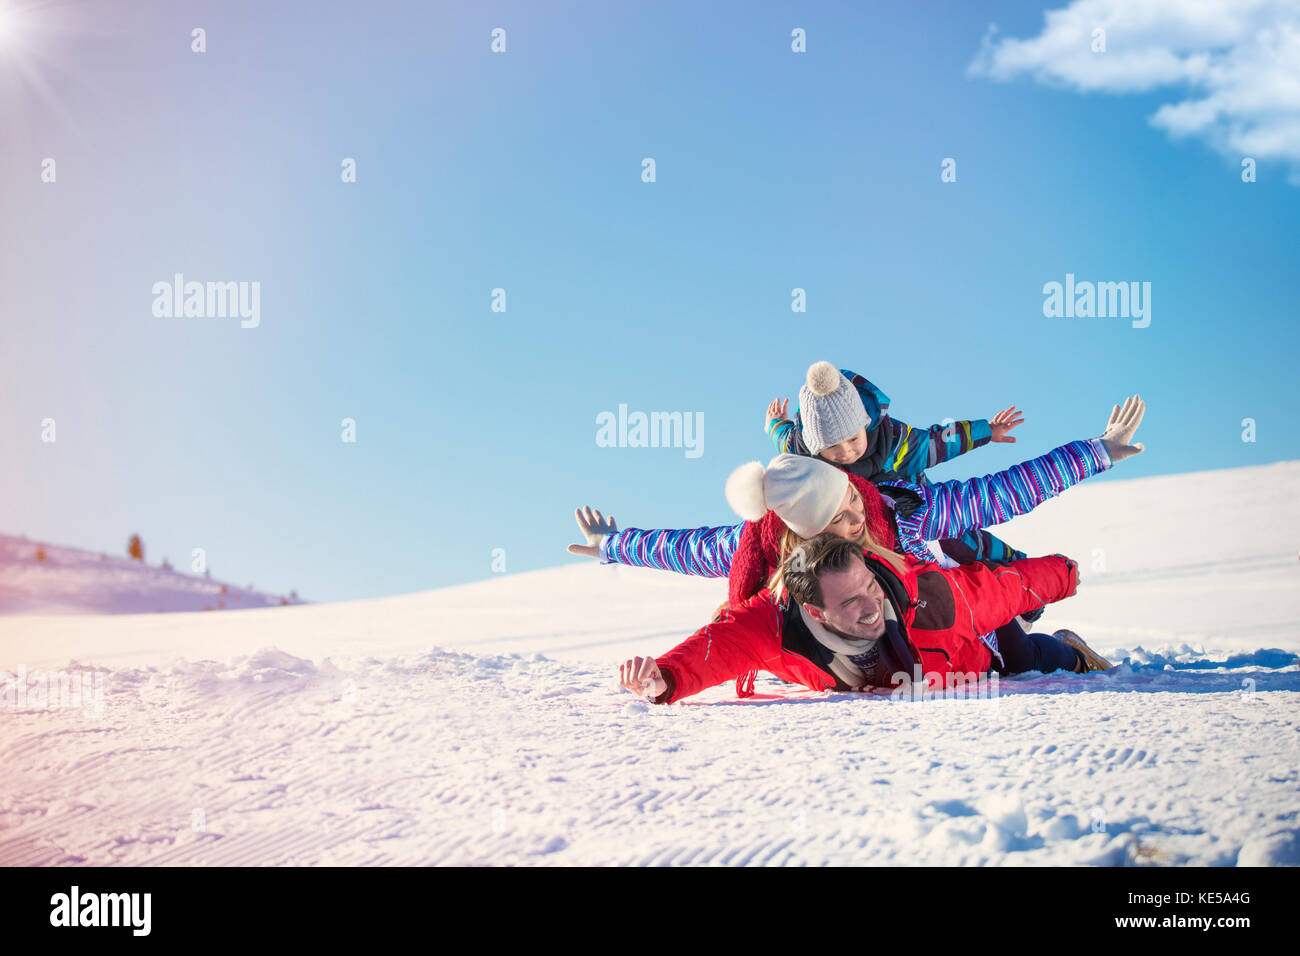 Ski, snow sun and fun - happy family on ski holiday Stock Photo